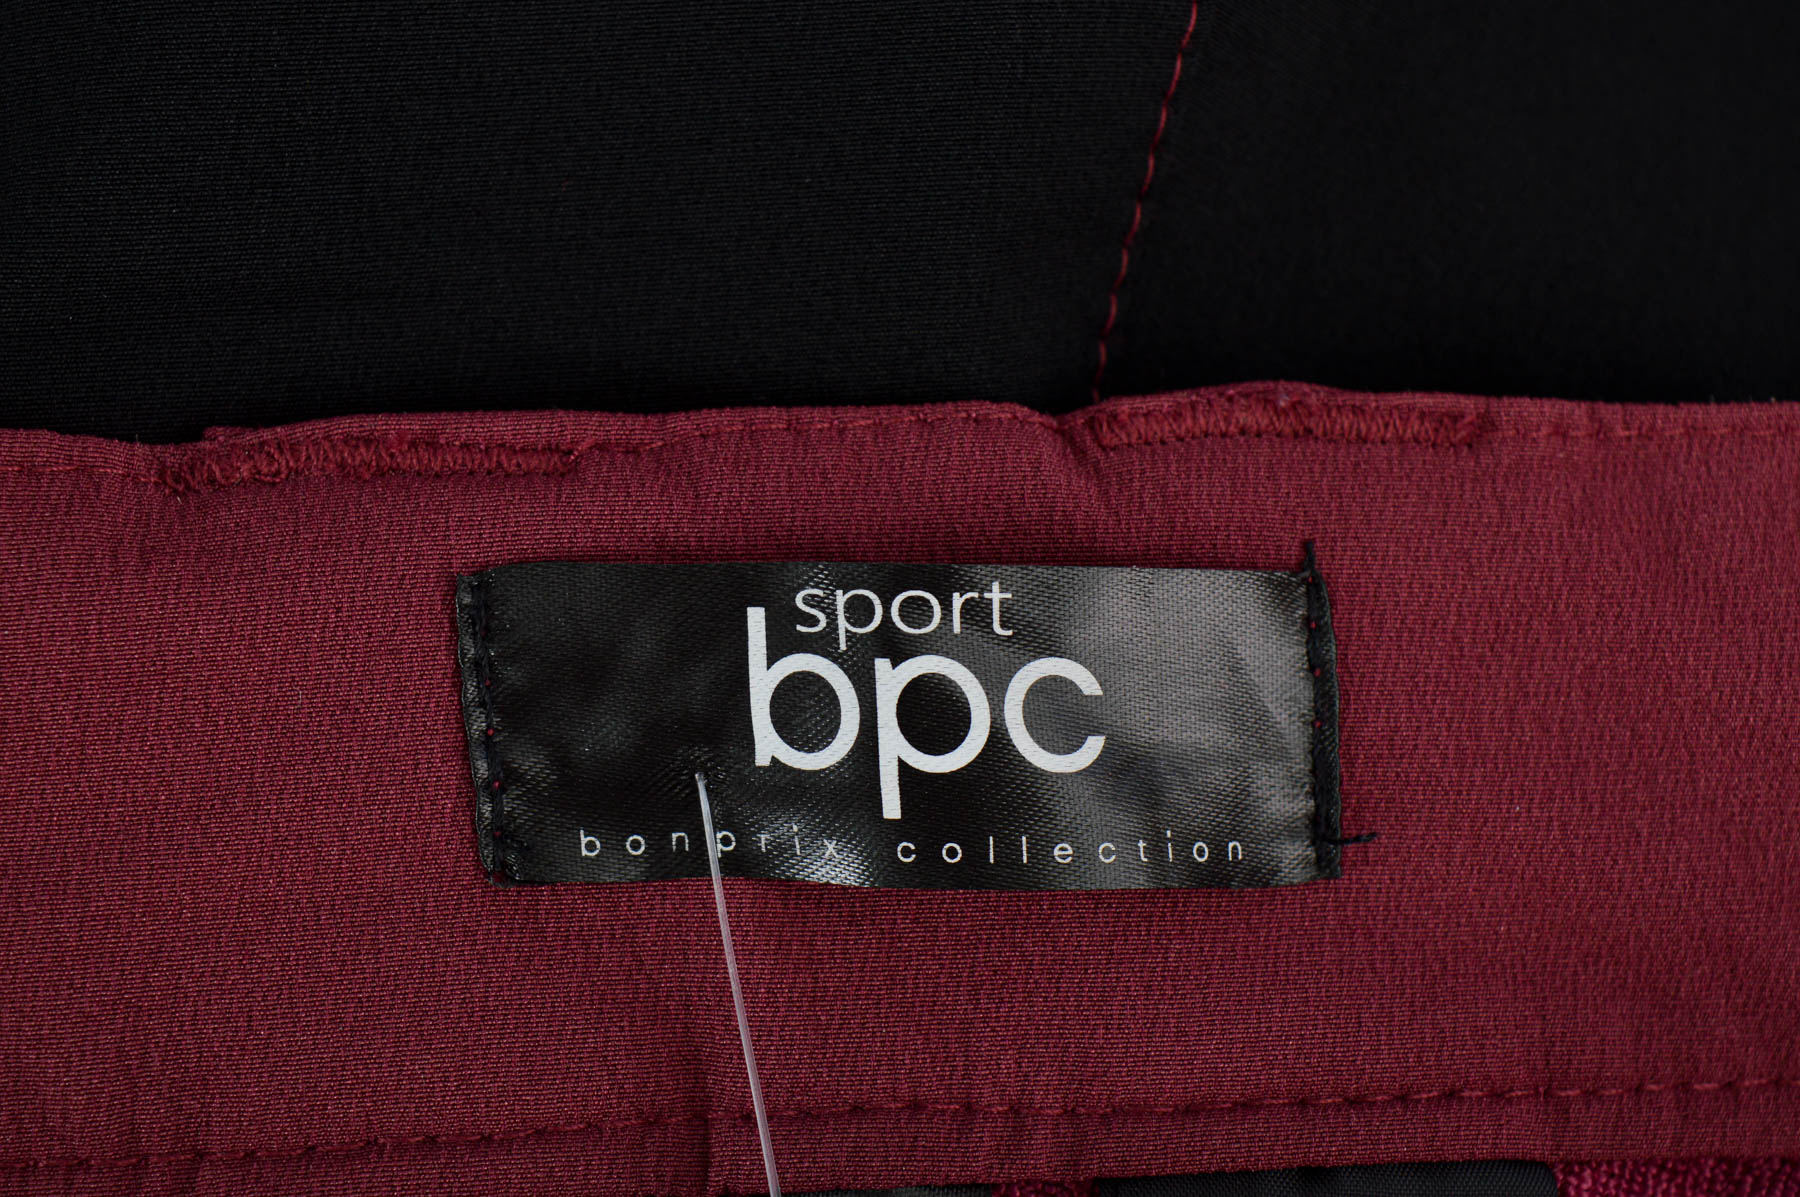 Spodnie damskie - Bpc Bonprix Collection - 2